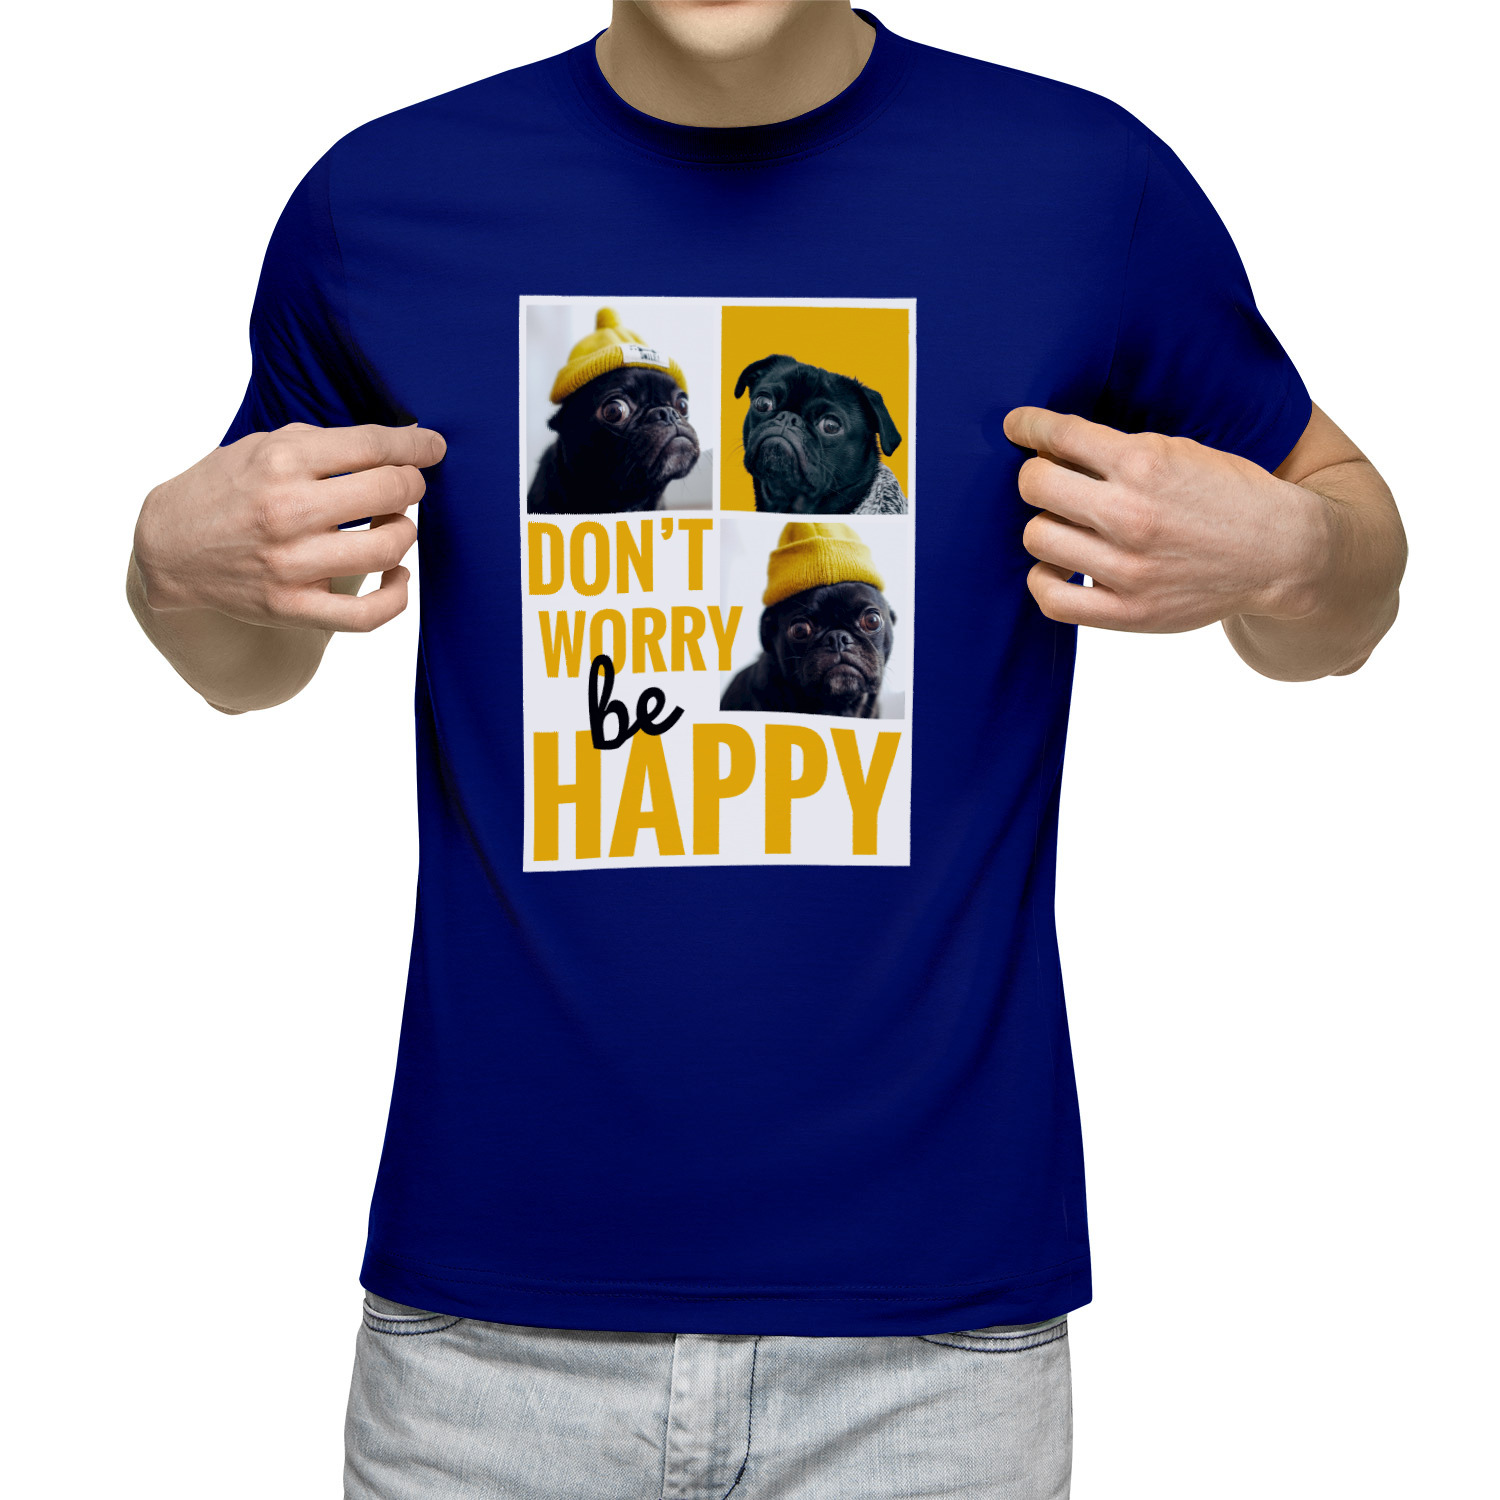 Dont happy